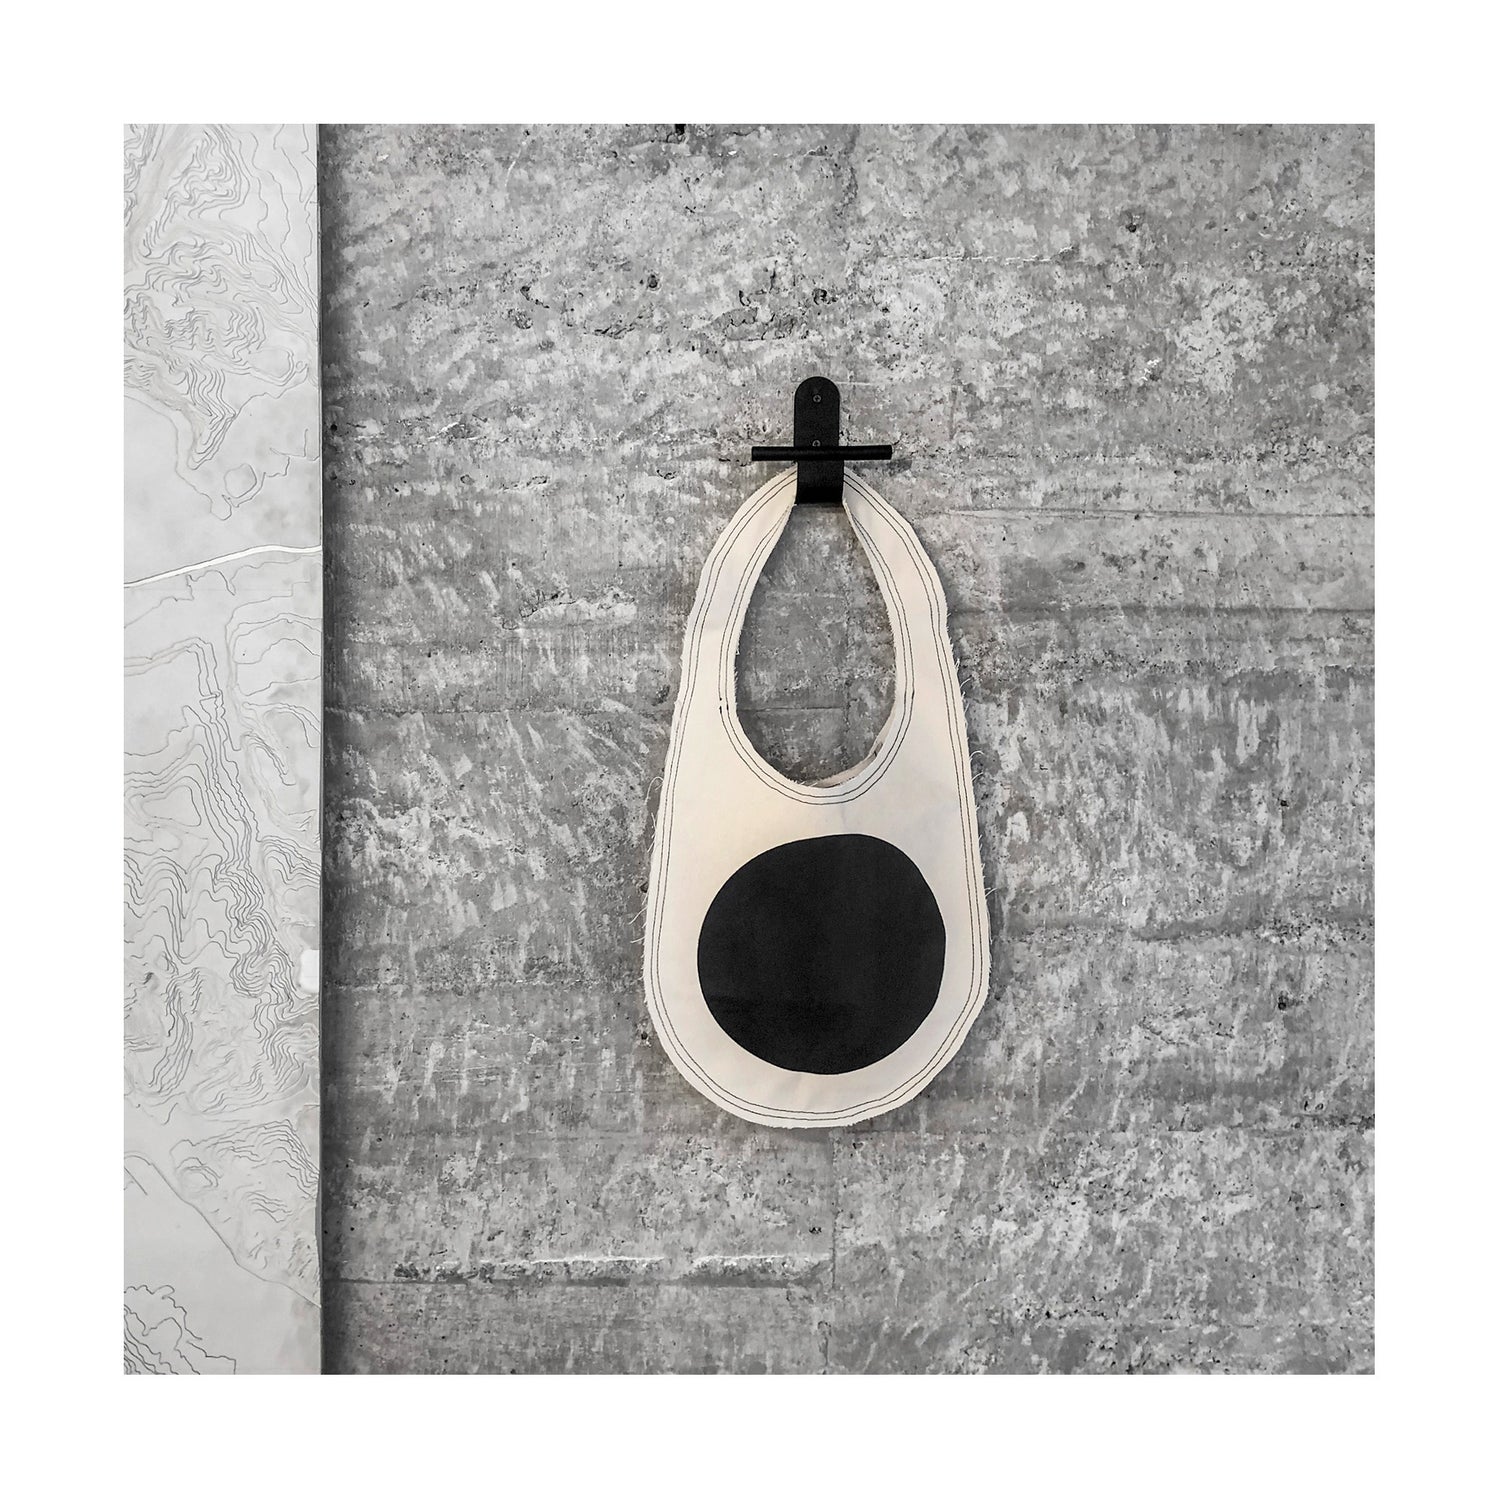 imagem quadrada mostra bolsa tiracolo grande de formato oval, com círculo preto grande estampado no centro, pendurada em cabideiro de aço preto fixado numa parede de concreto